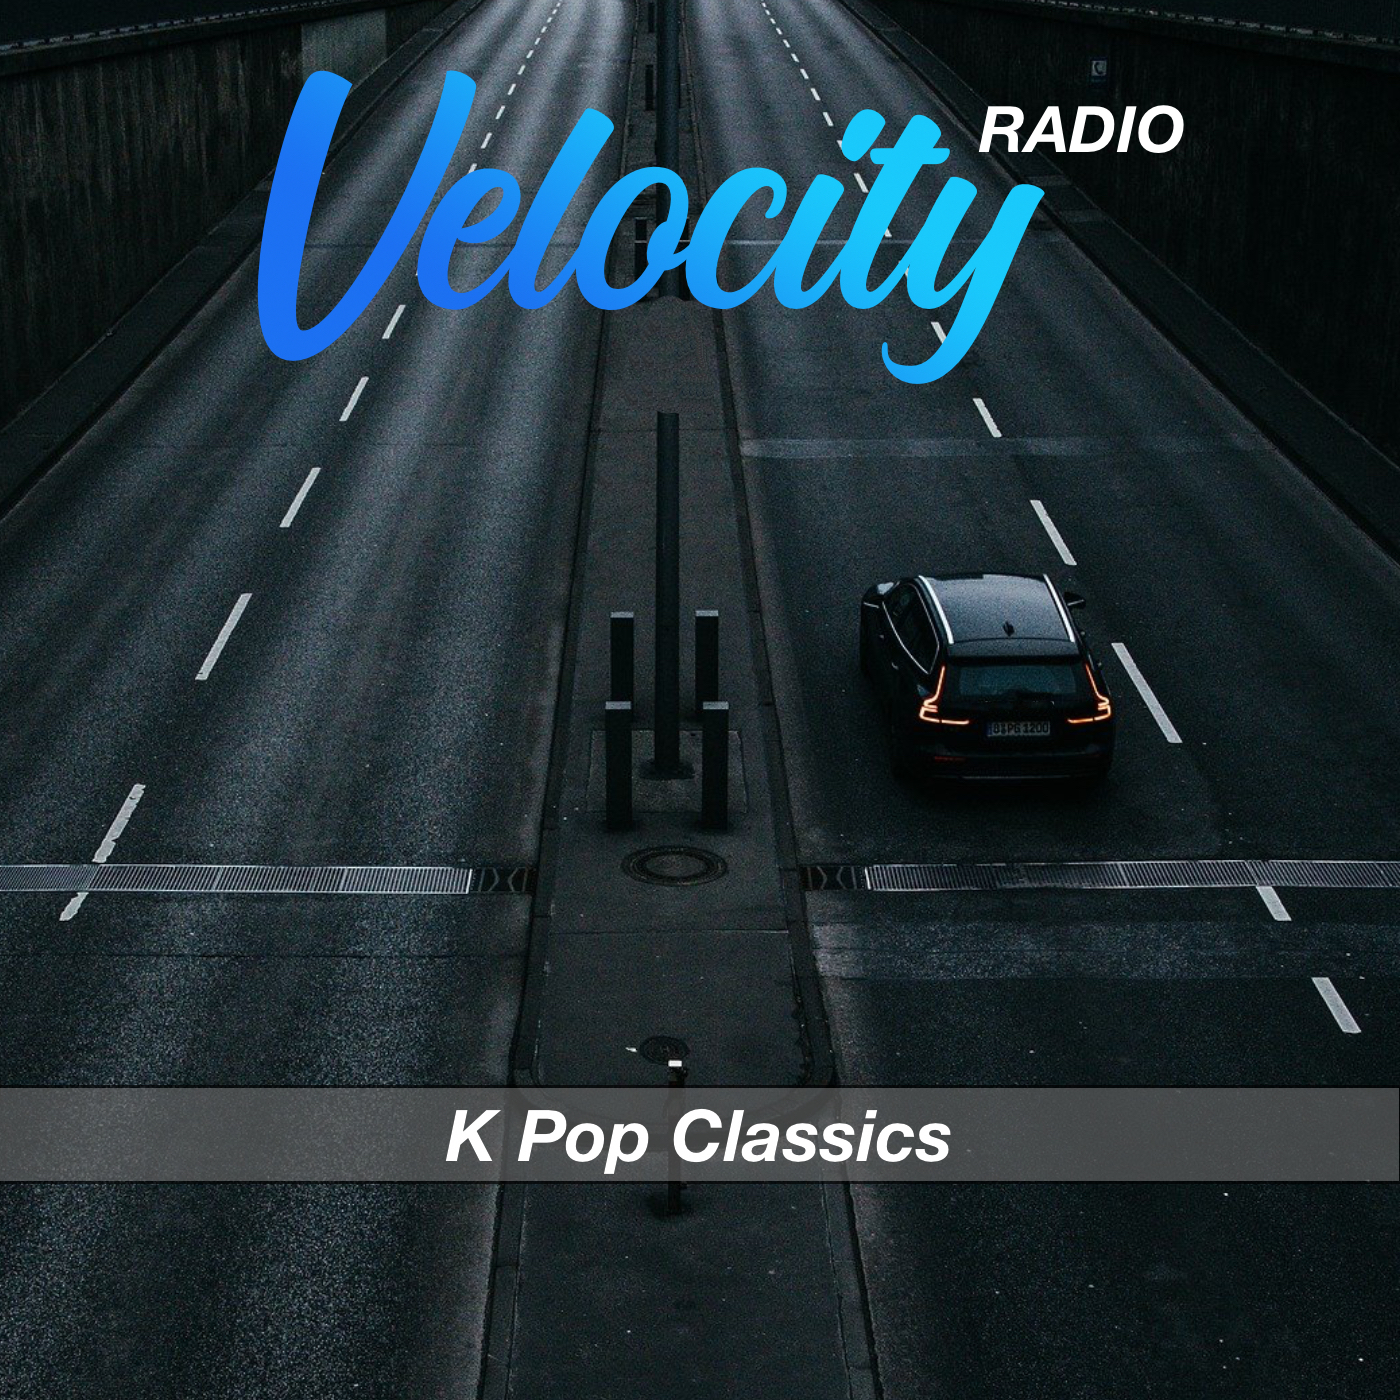 Velocity Radio - Kpop Classics